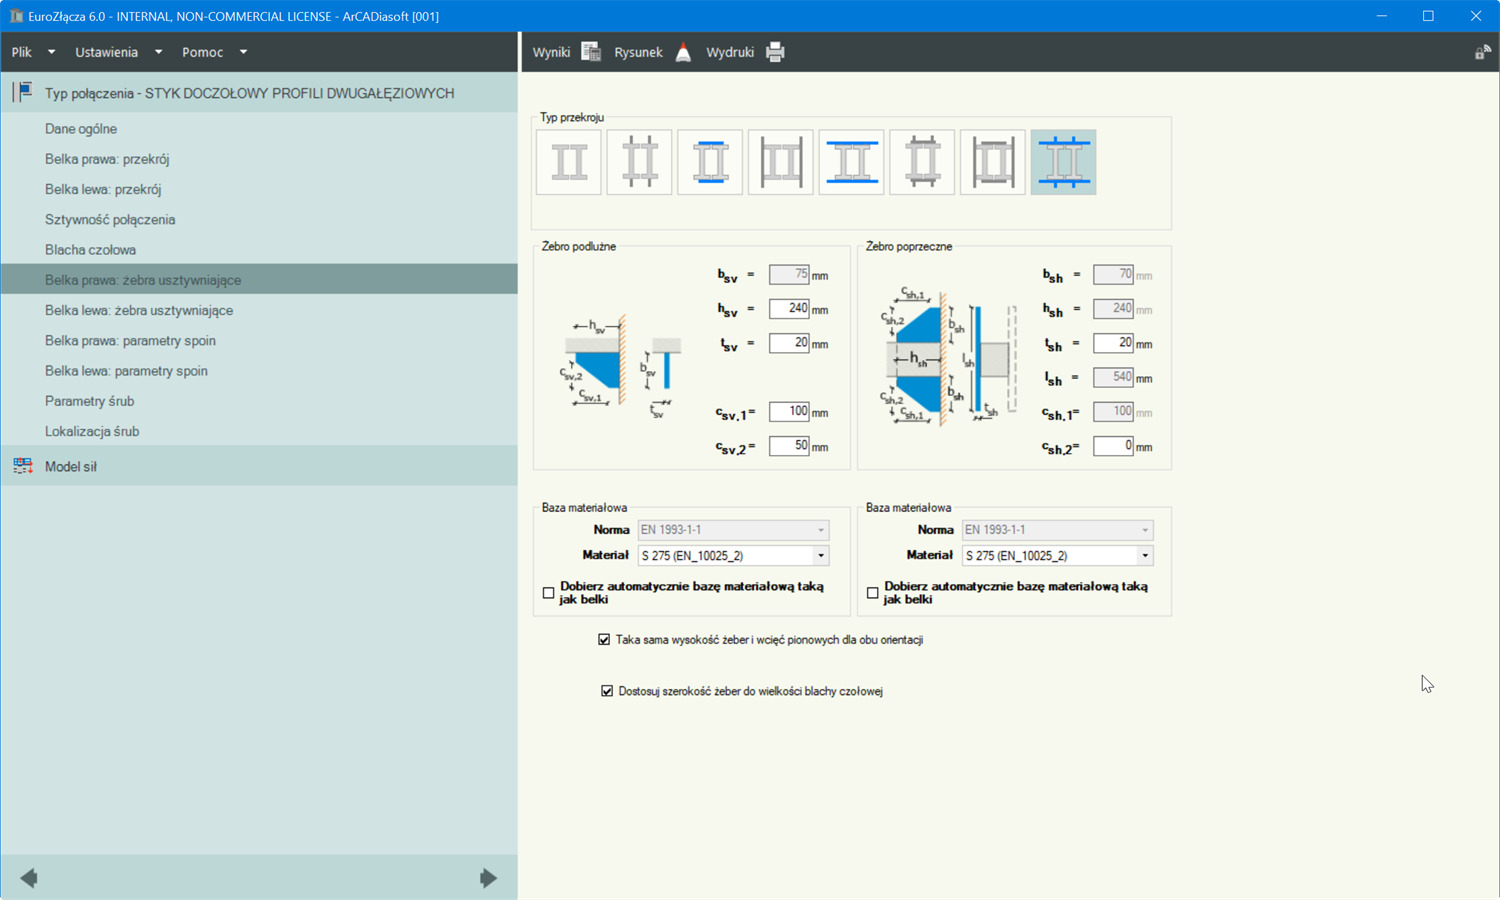 Aktualizacja do Eurozcza 6.0 z wersji 5.0 | INTERsoft program CAD